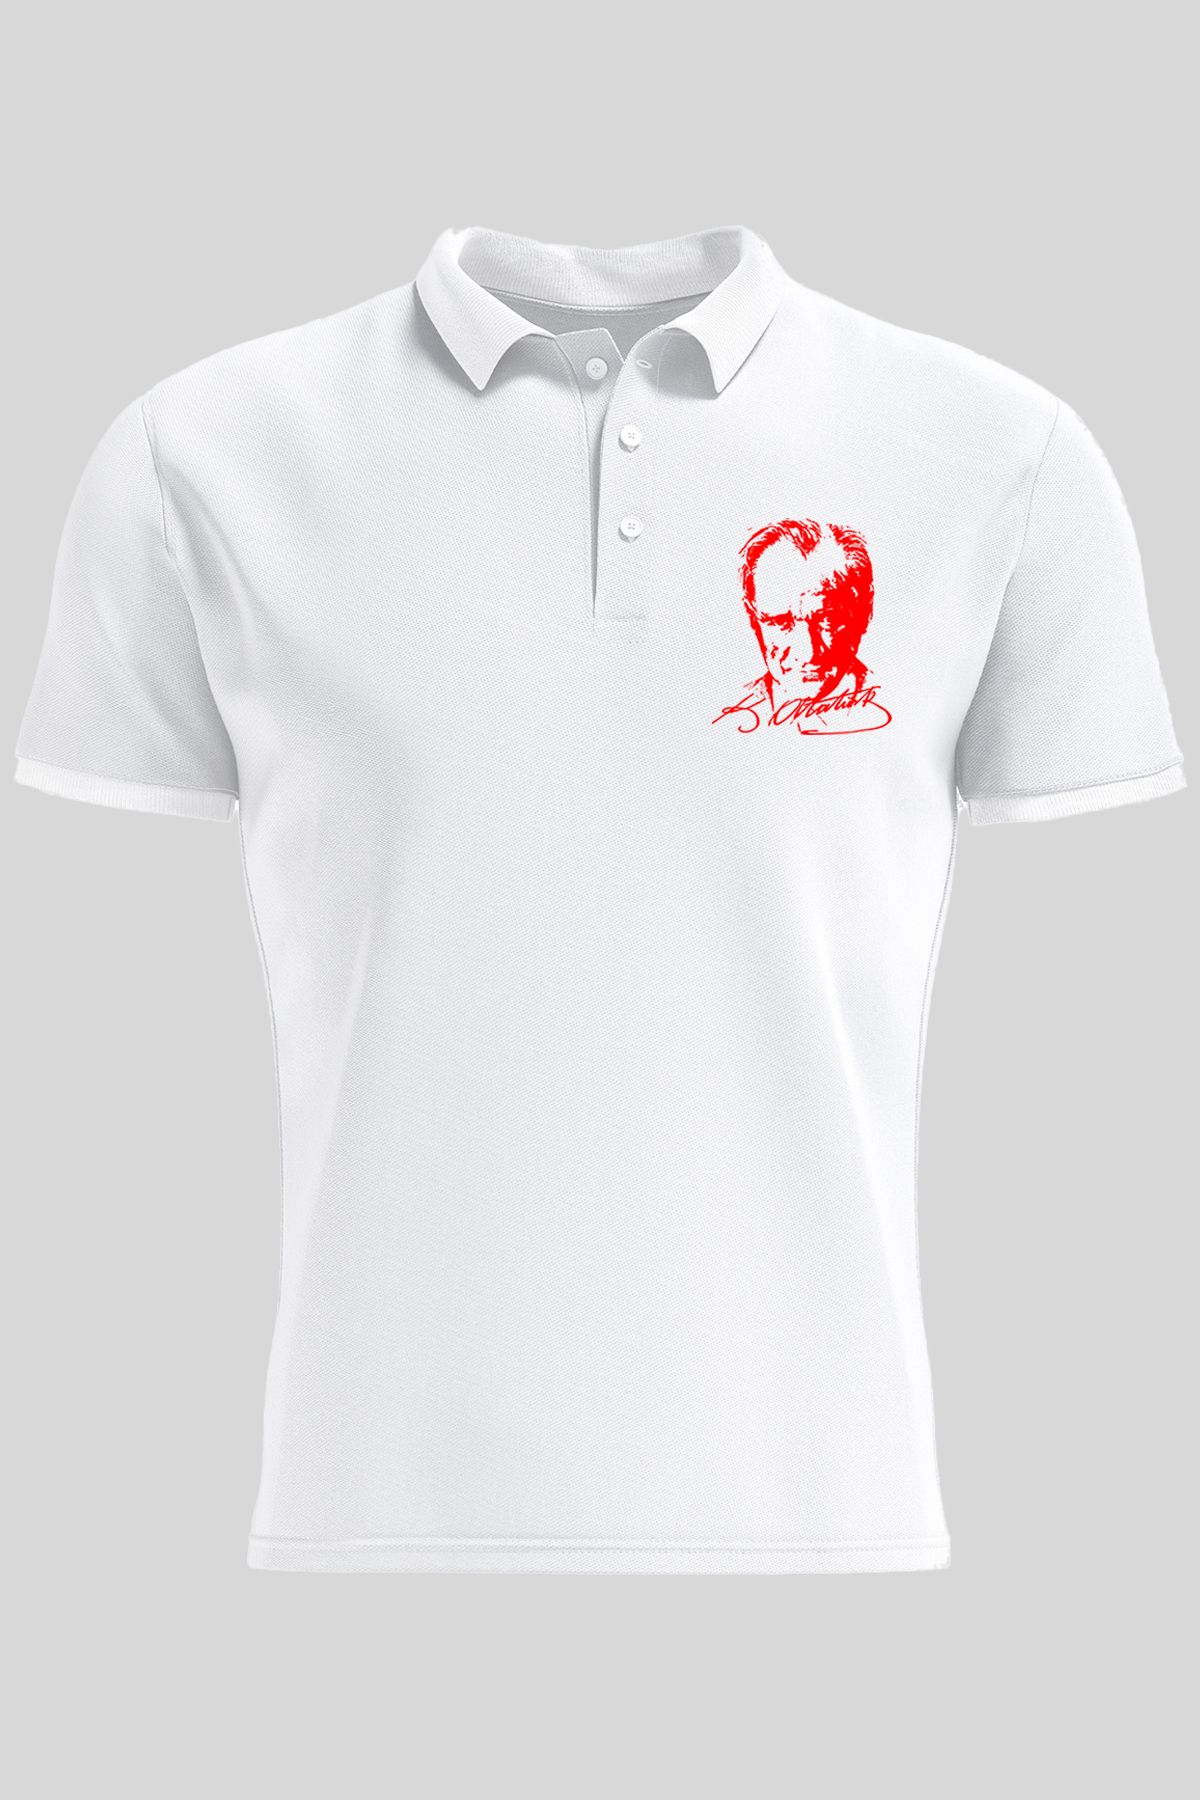 Çapıt Polo Yaka Atatürk Baskılı Beyaz Kısa Kollu 23 Nisan Tişört